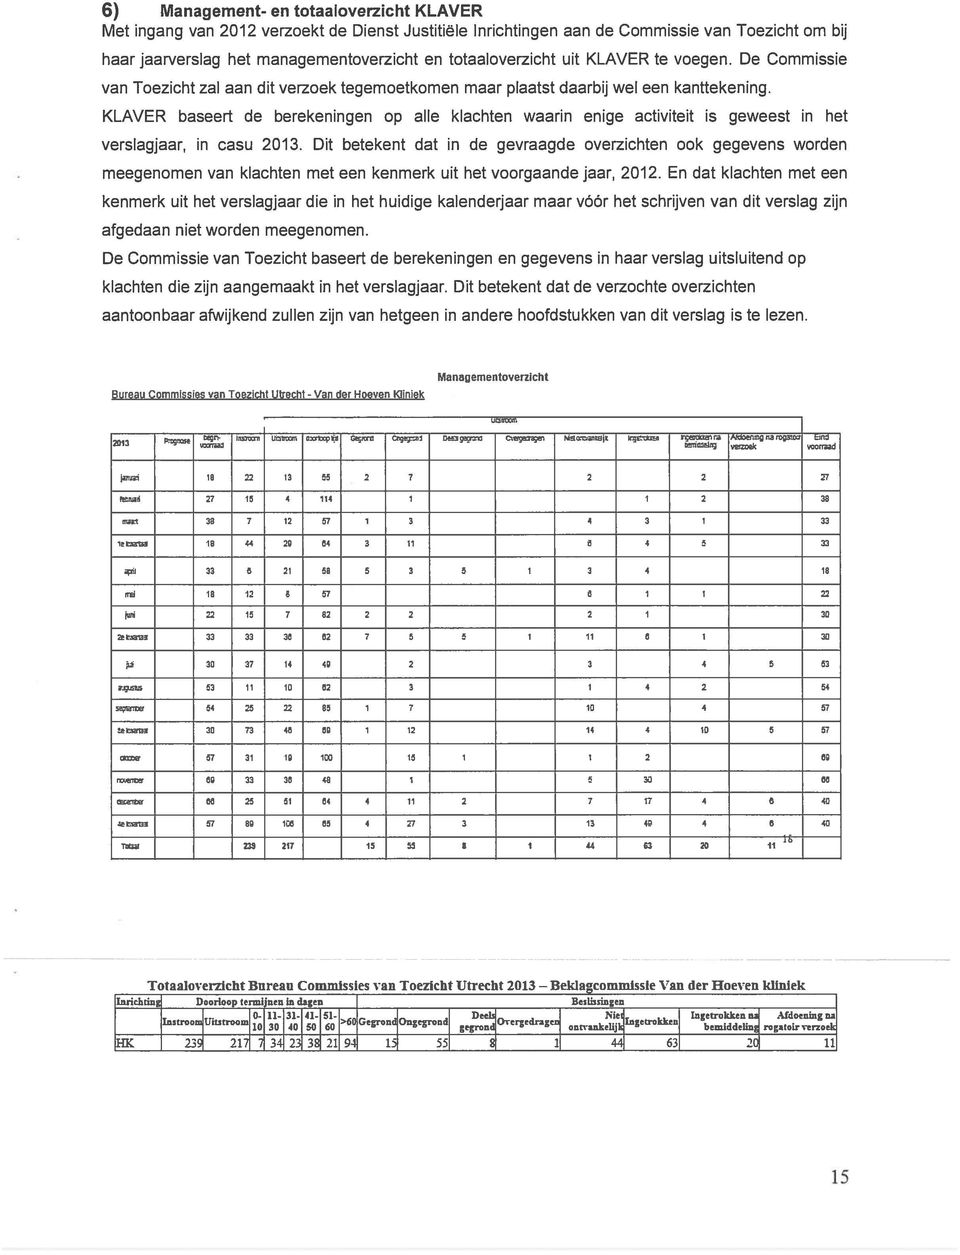 KLAVER baseert de berekeningen op alle klachten waarin enige activiteit is geweest in het verslagjaar, in casu 2013.